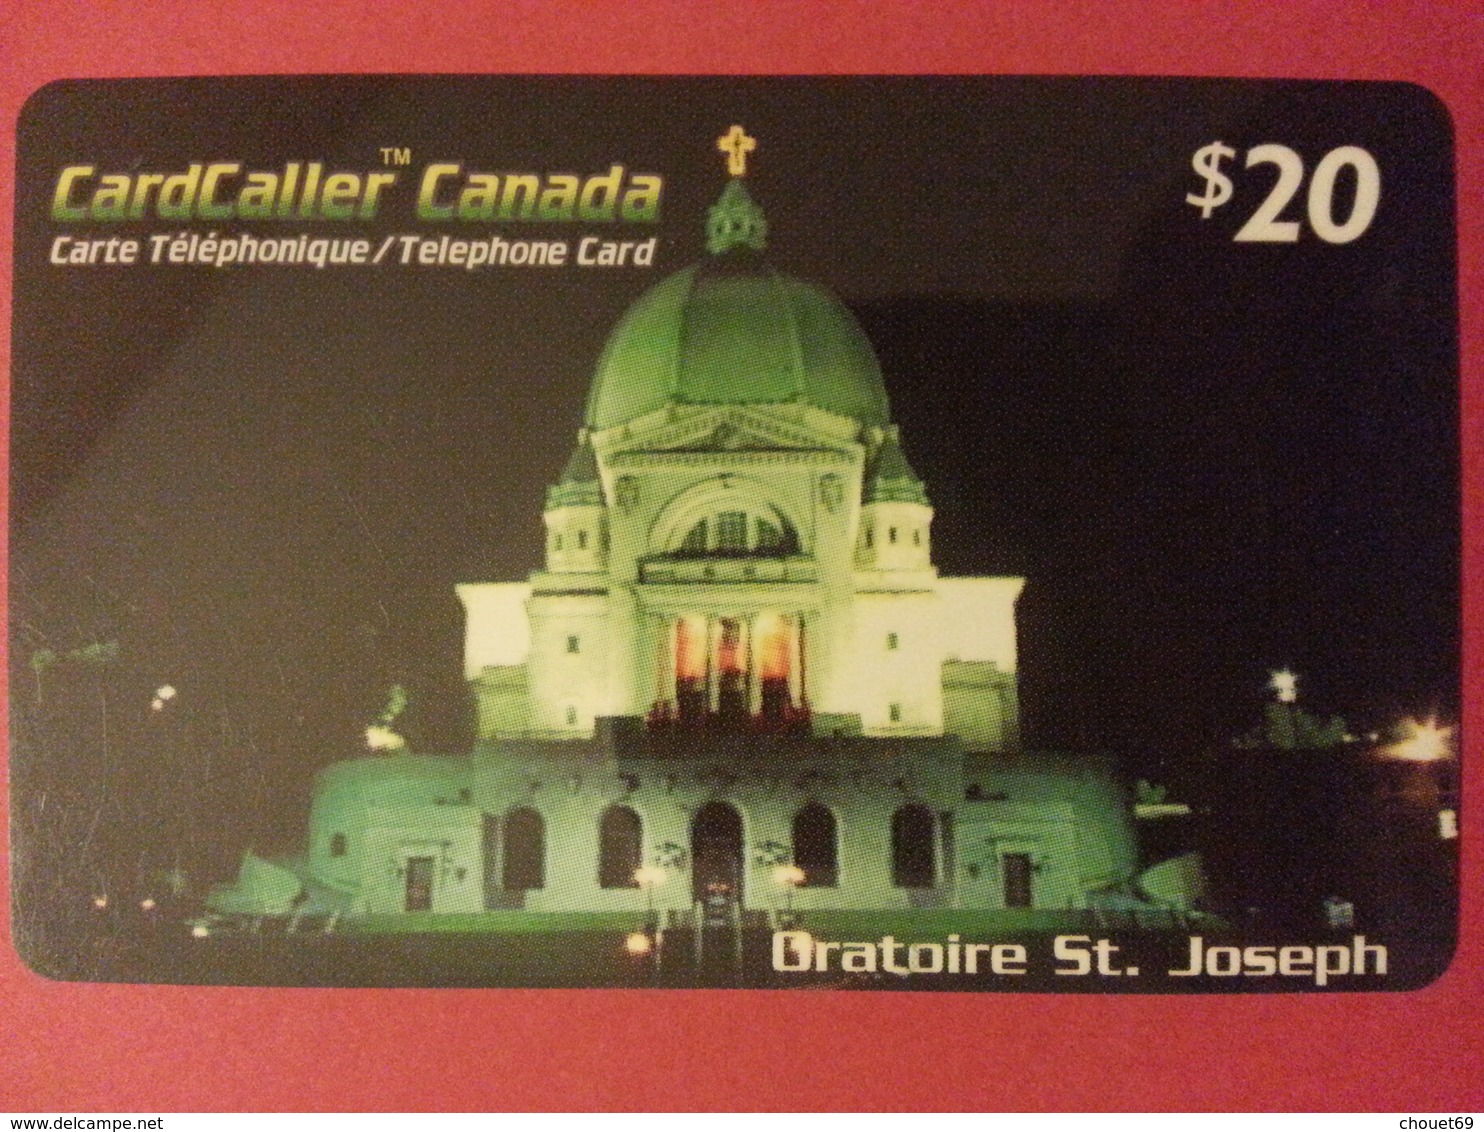 Cardcaller Canada Prepaid Oratoire St Joseph  (B0615 - Onbekende Oorsprong